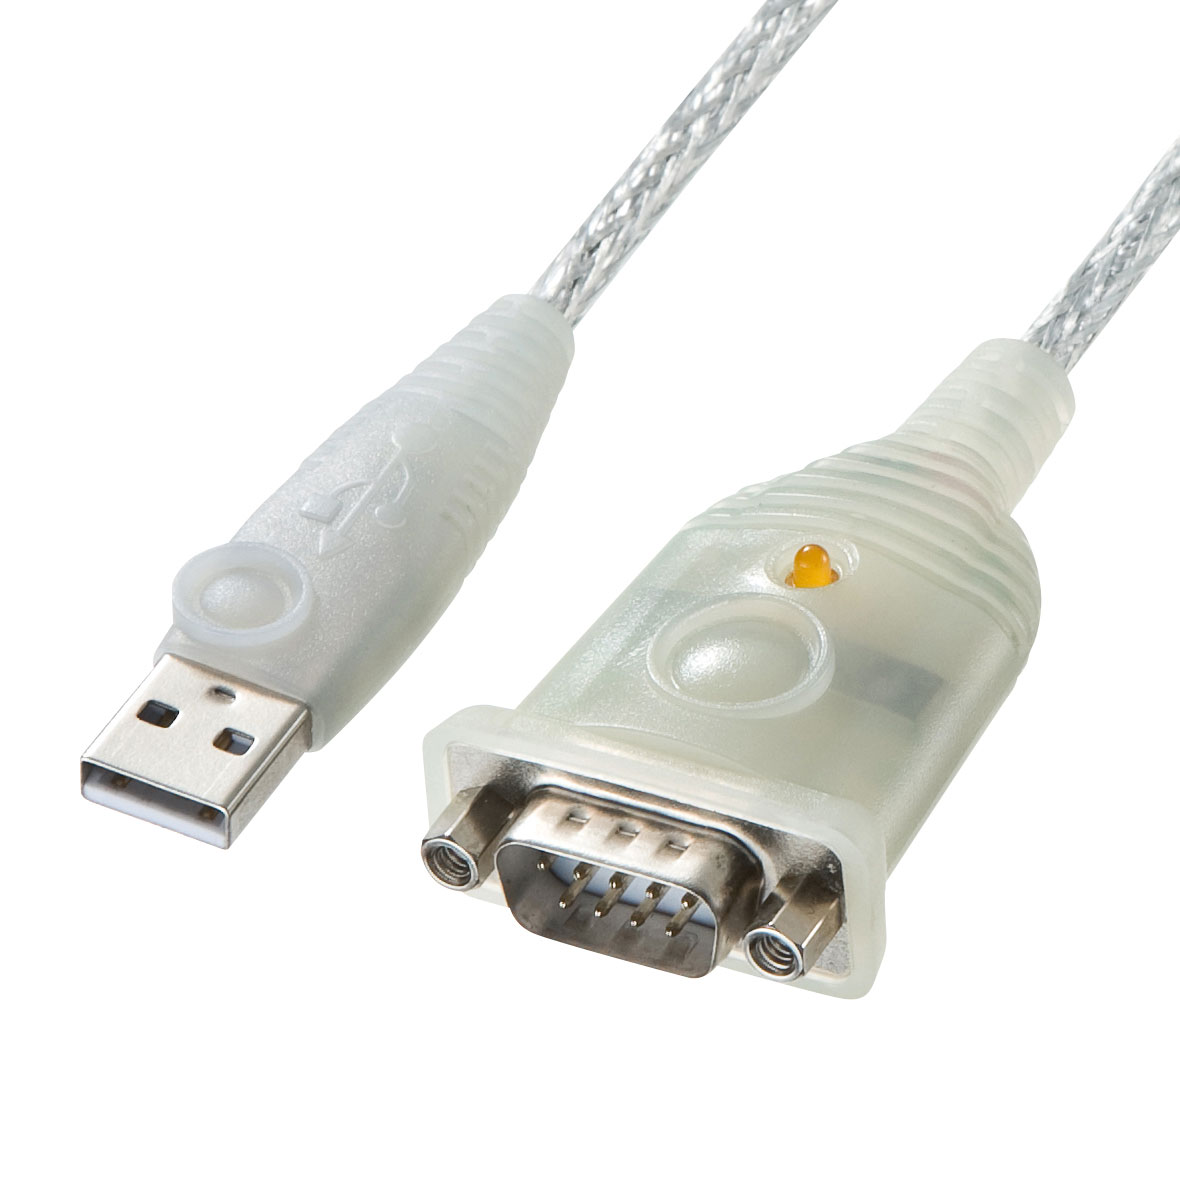 LINDY USB - シリアル(RS-485 D-Sub 9ピン) 変換ケーブル 1m (型番